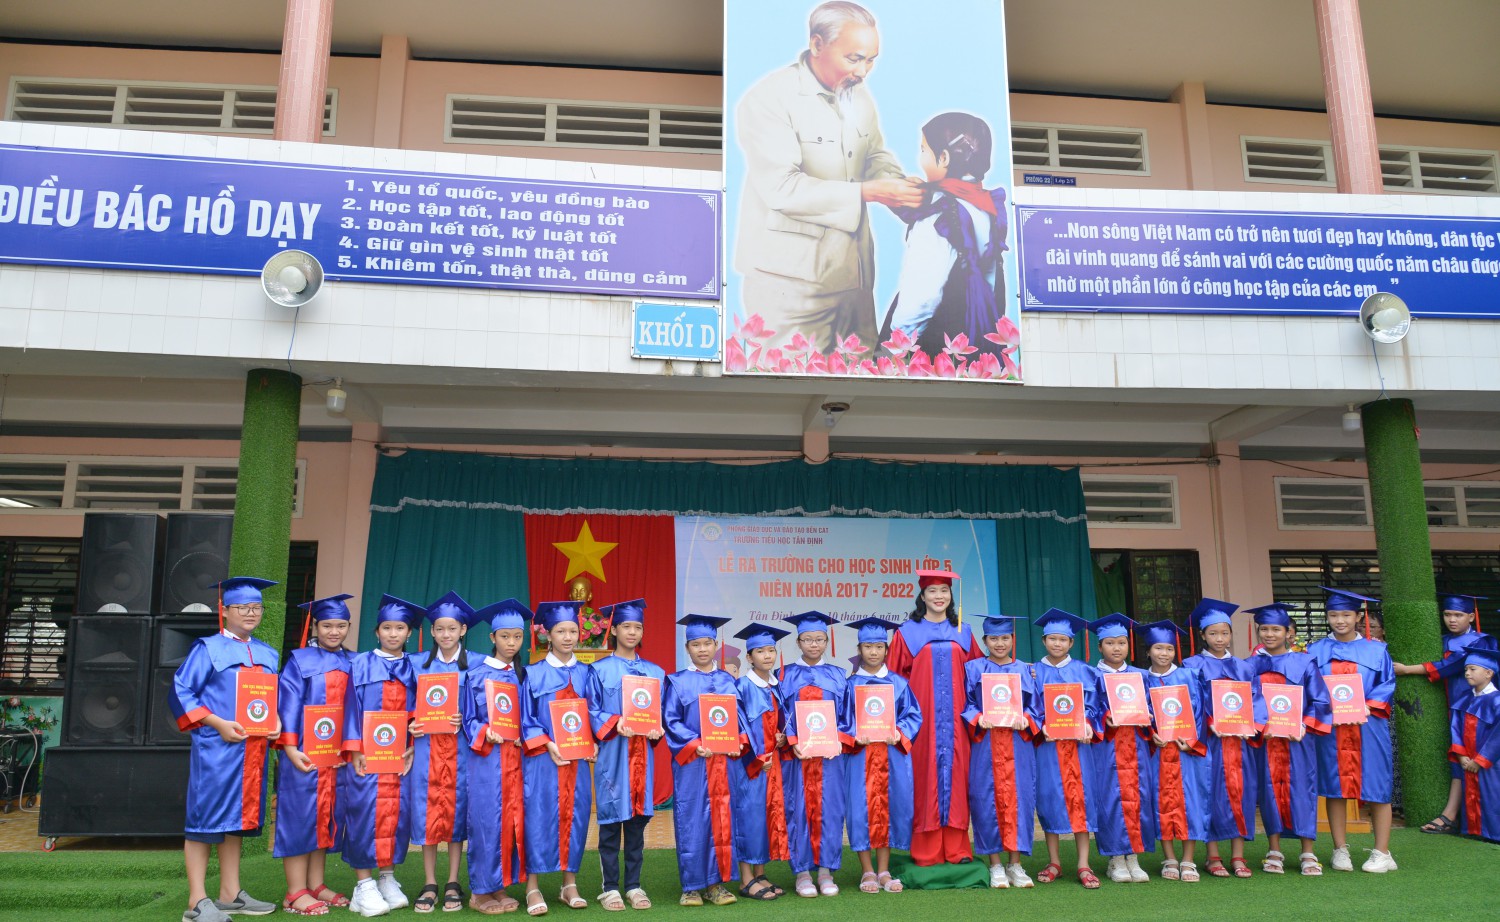 Trao Bằng tốt nghiệp cho học sinh hoàn thành chương trình tiểu học